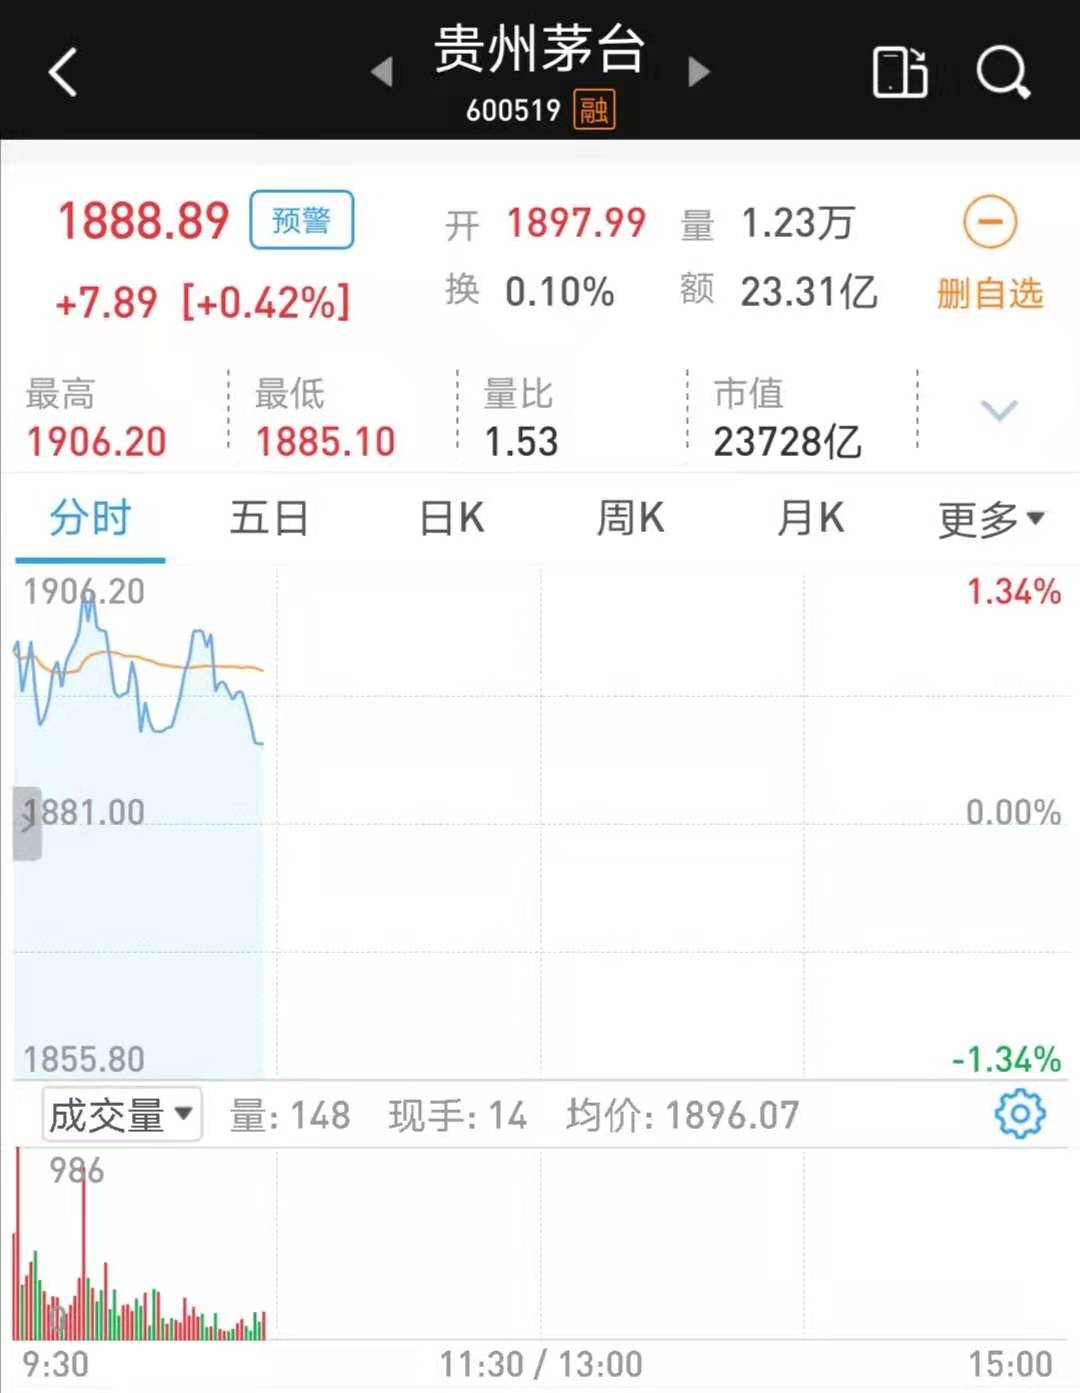 贵州茅台股价突破1900元关口,再创历史新高